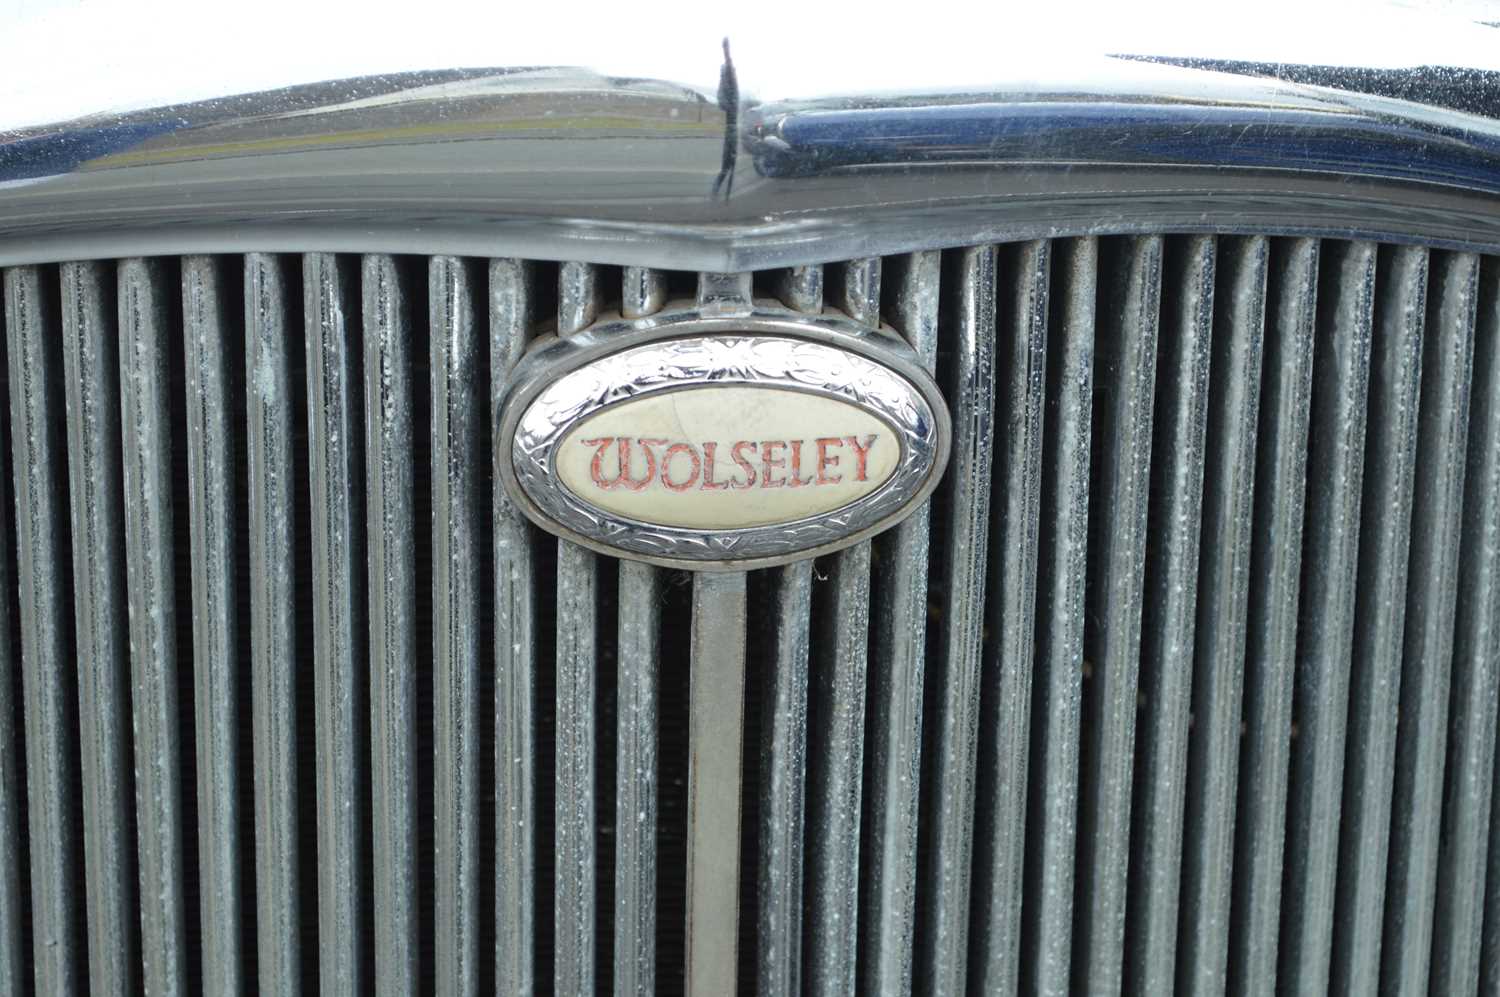 1939 Wolseley New Ten 10HP four door saloon - Image 10 of 59